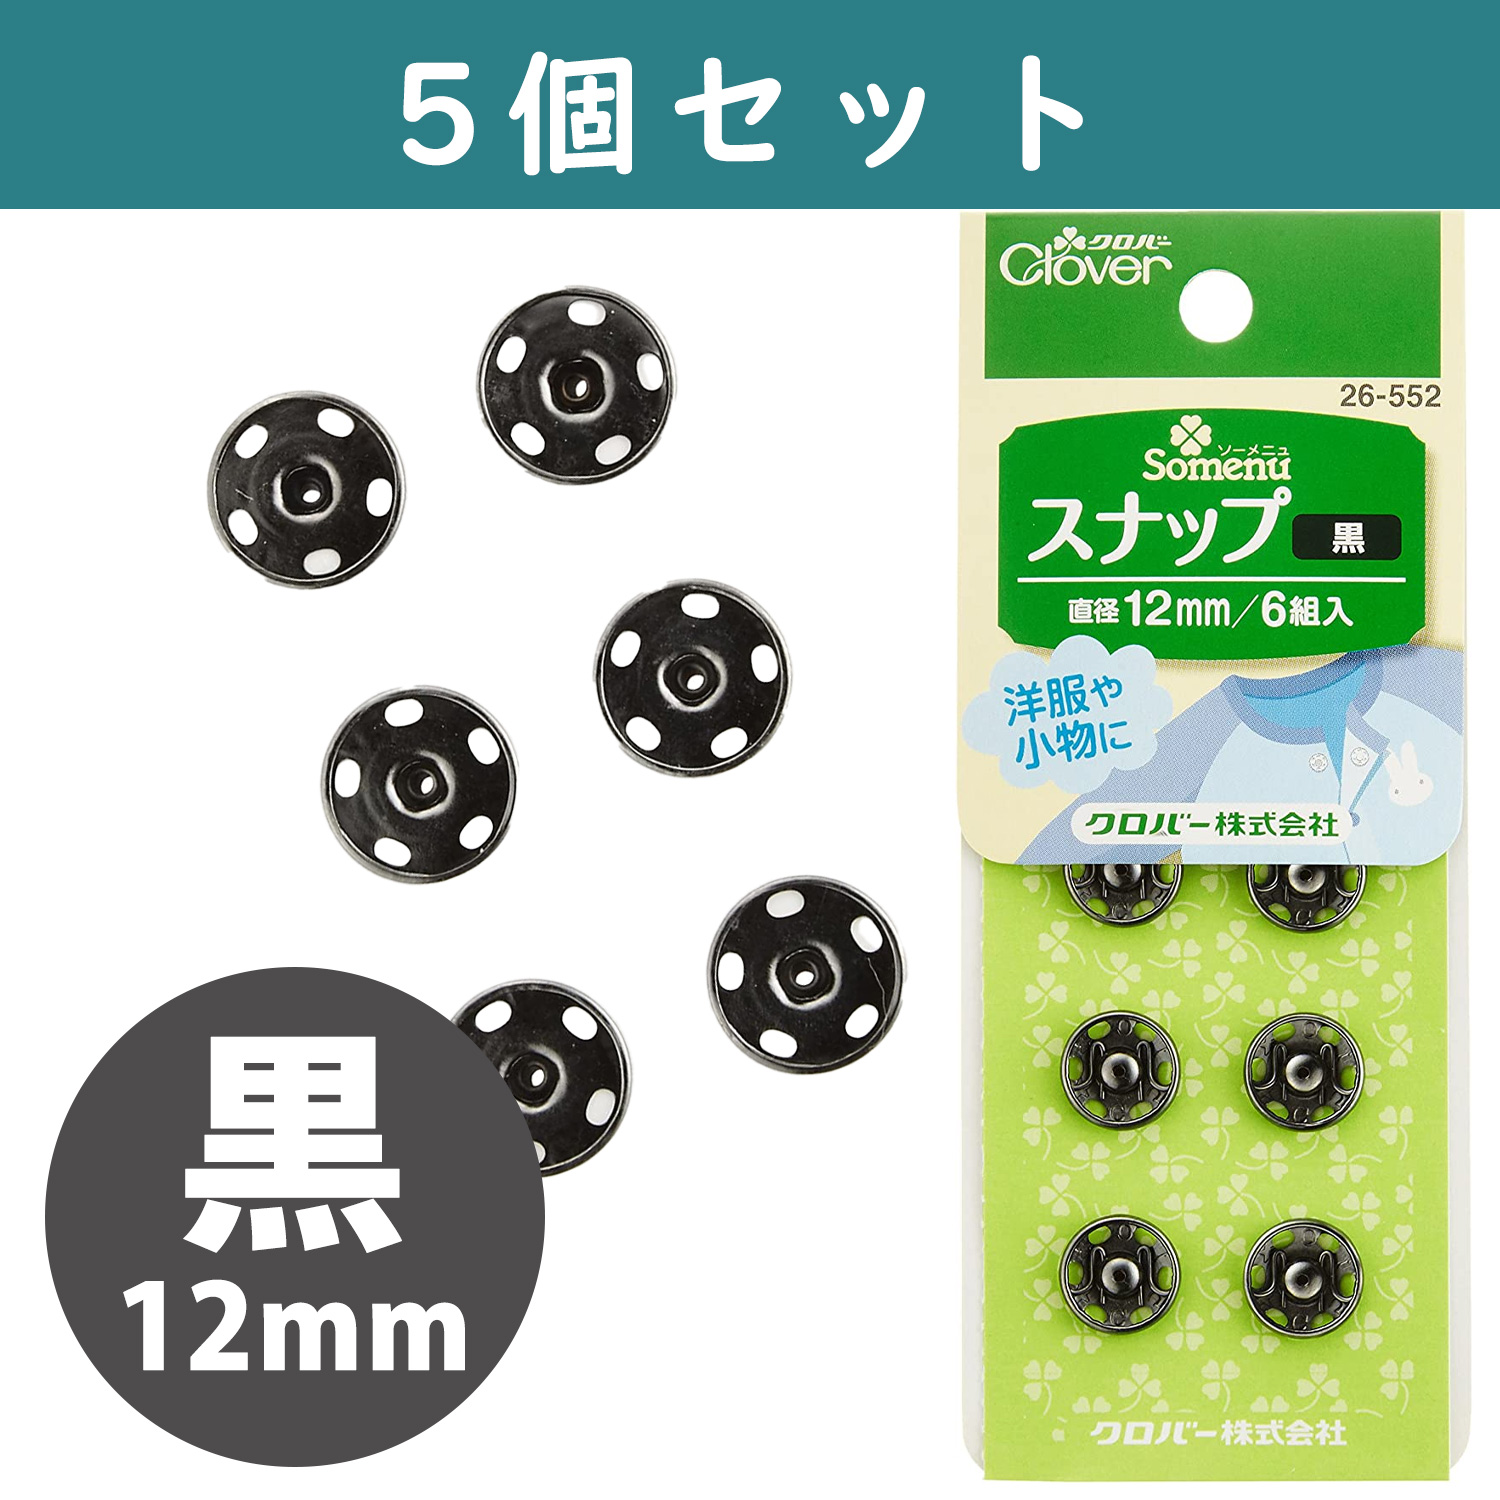 ■【5個】CL26-552-5set スナップ 12mm 6組入り 黒 ×5個　(セット)